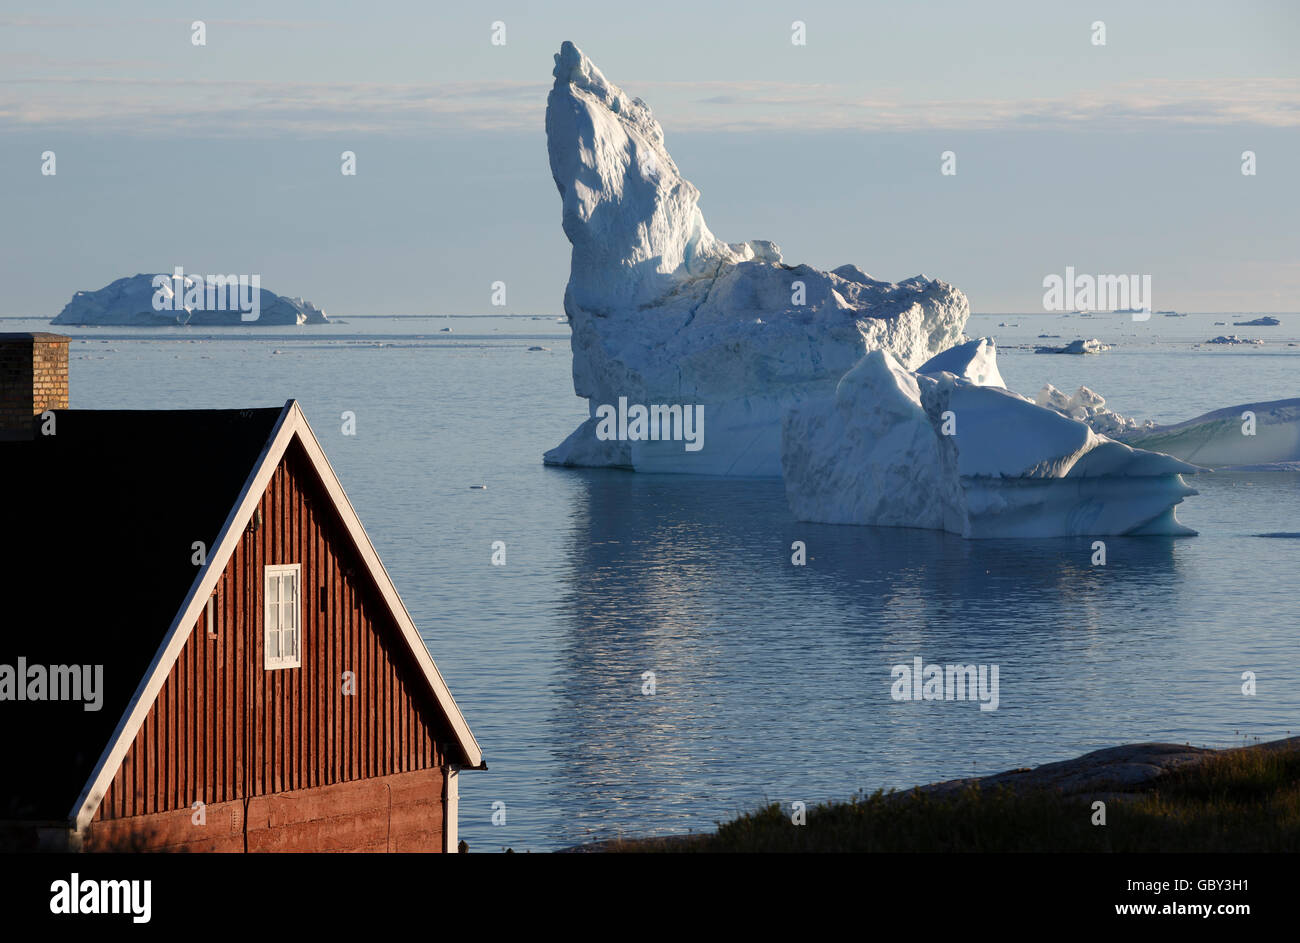 Ilulissat, Greenland Stock Photo